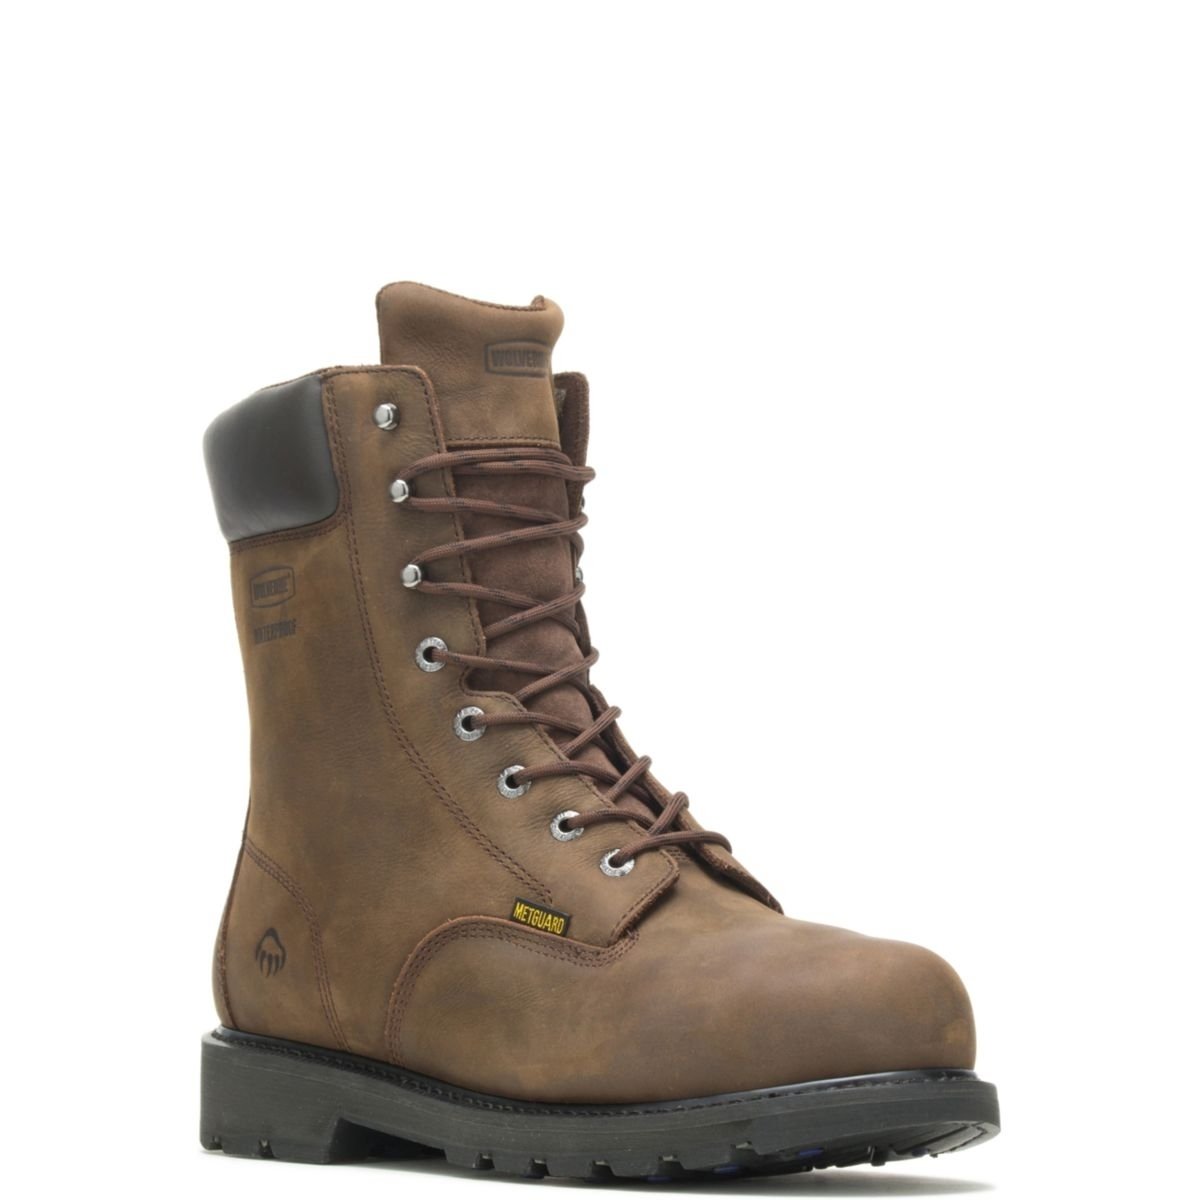 WOLVERINE Men's McKay 8 Waterproof Steel Toe Work Boot Brown - W05680 10 BROWN - BROWN, 9 X-Wide